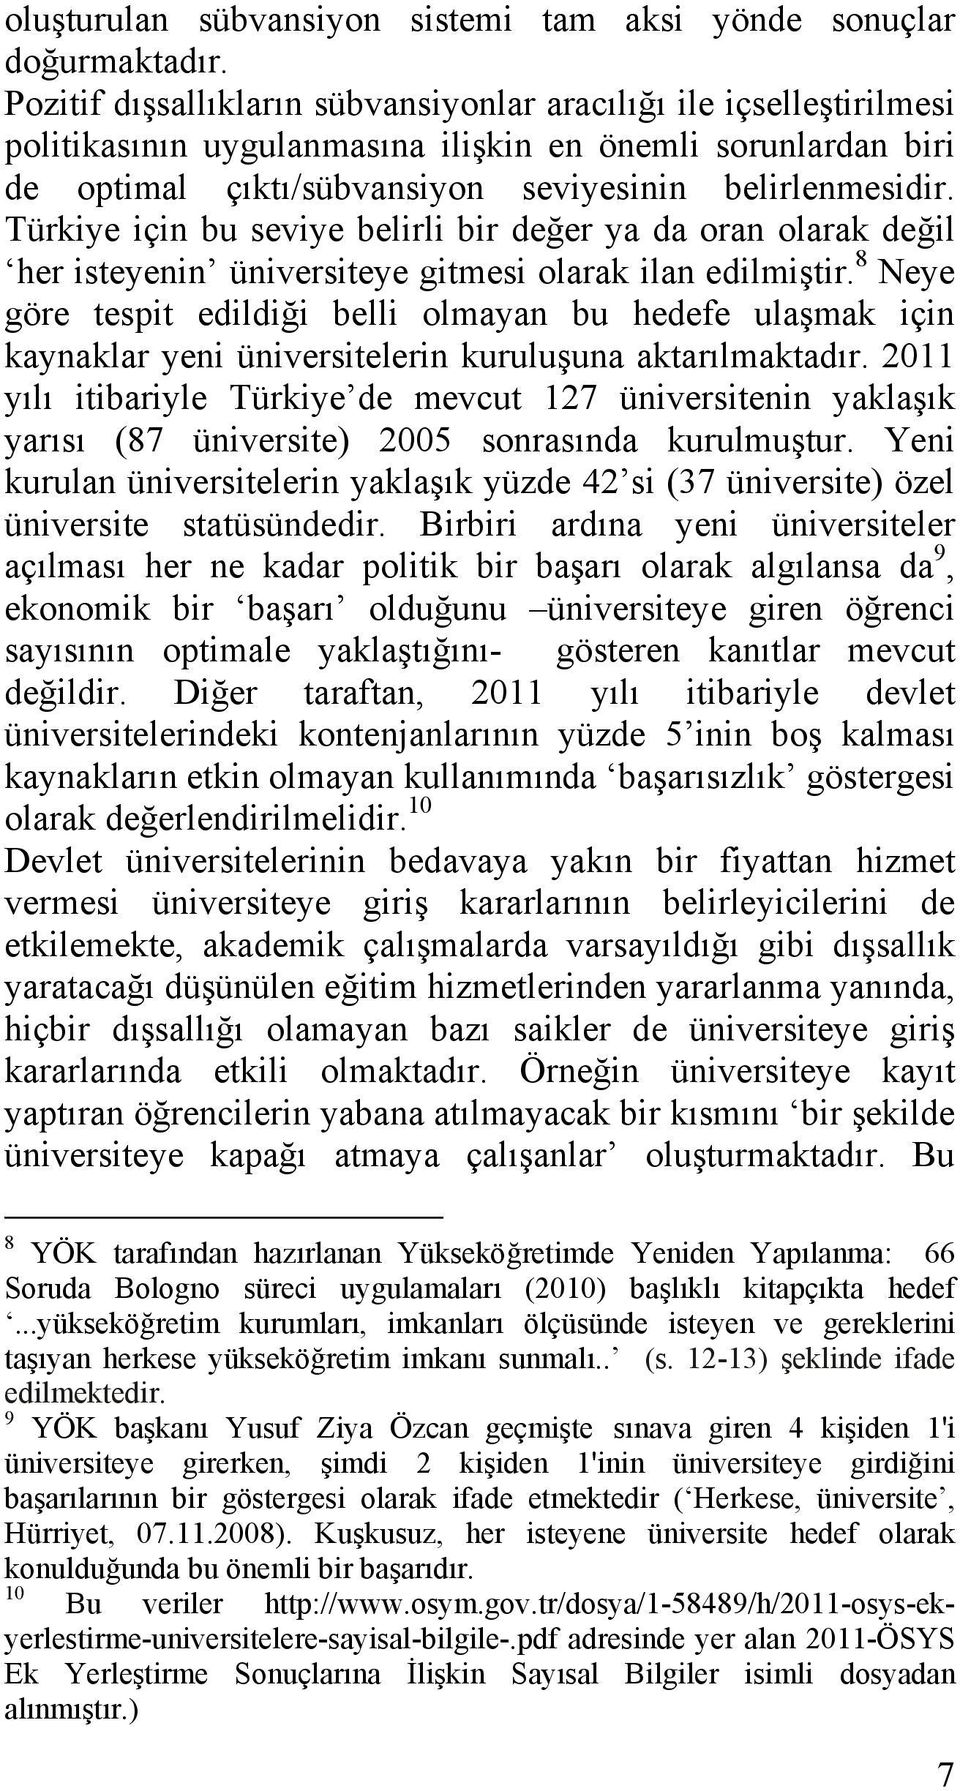 Türkiye için bu seviye belirli bir değer ya da oran olarak değil her isteyenin üniversiteye gitmesi olarak ilan edilmiştir.